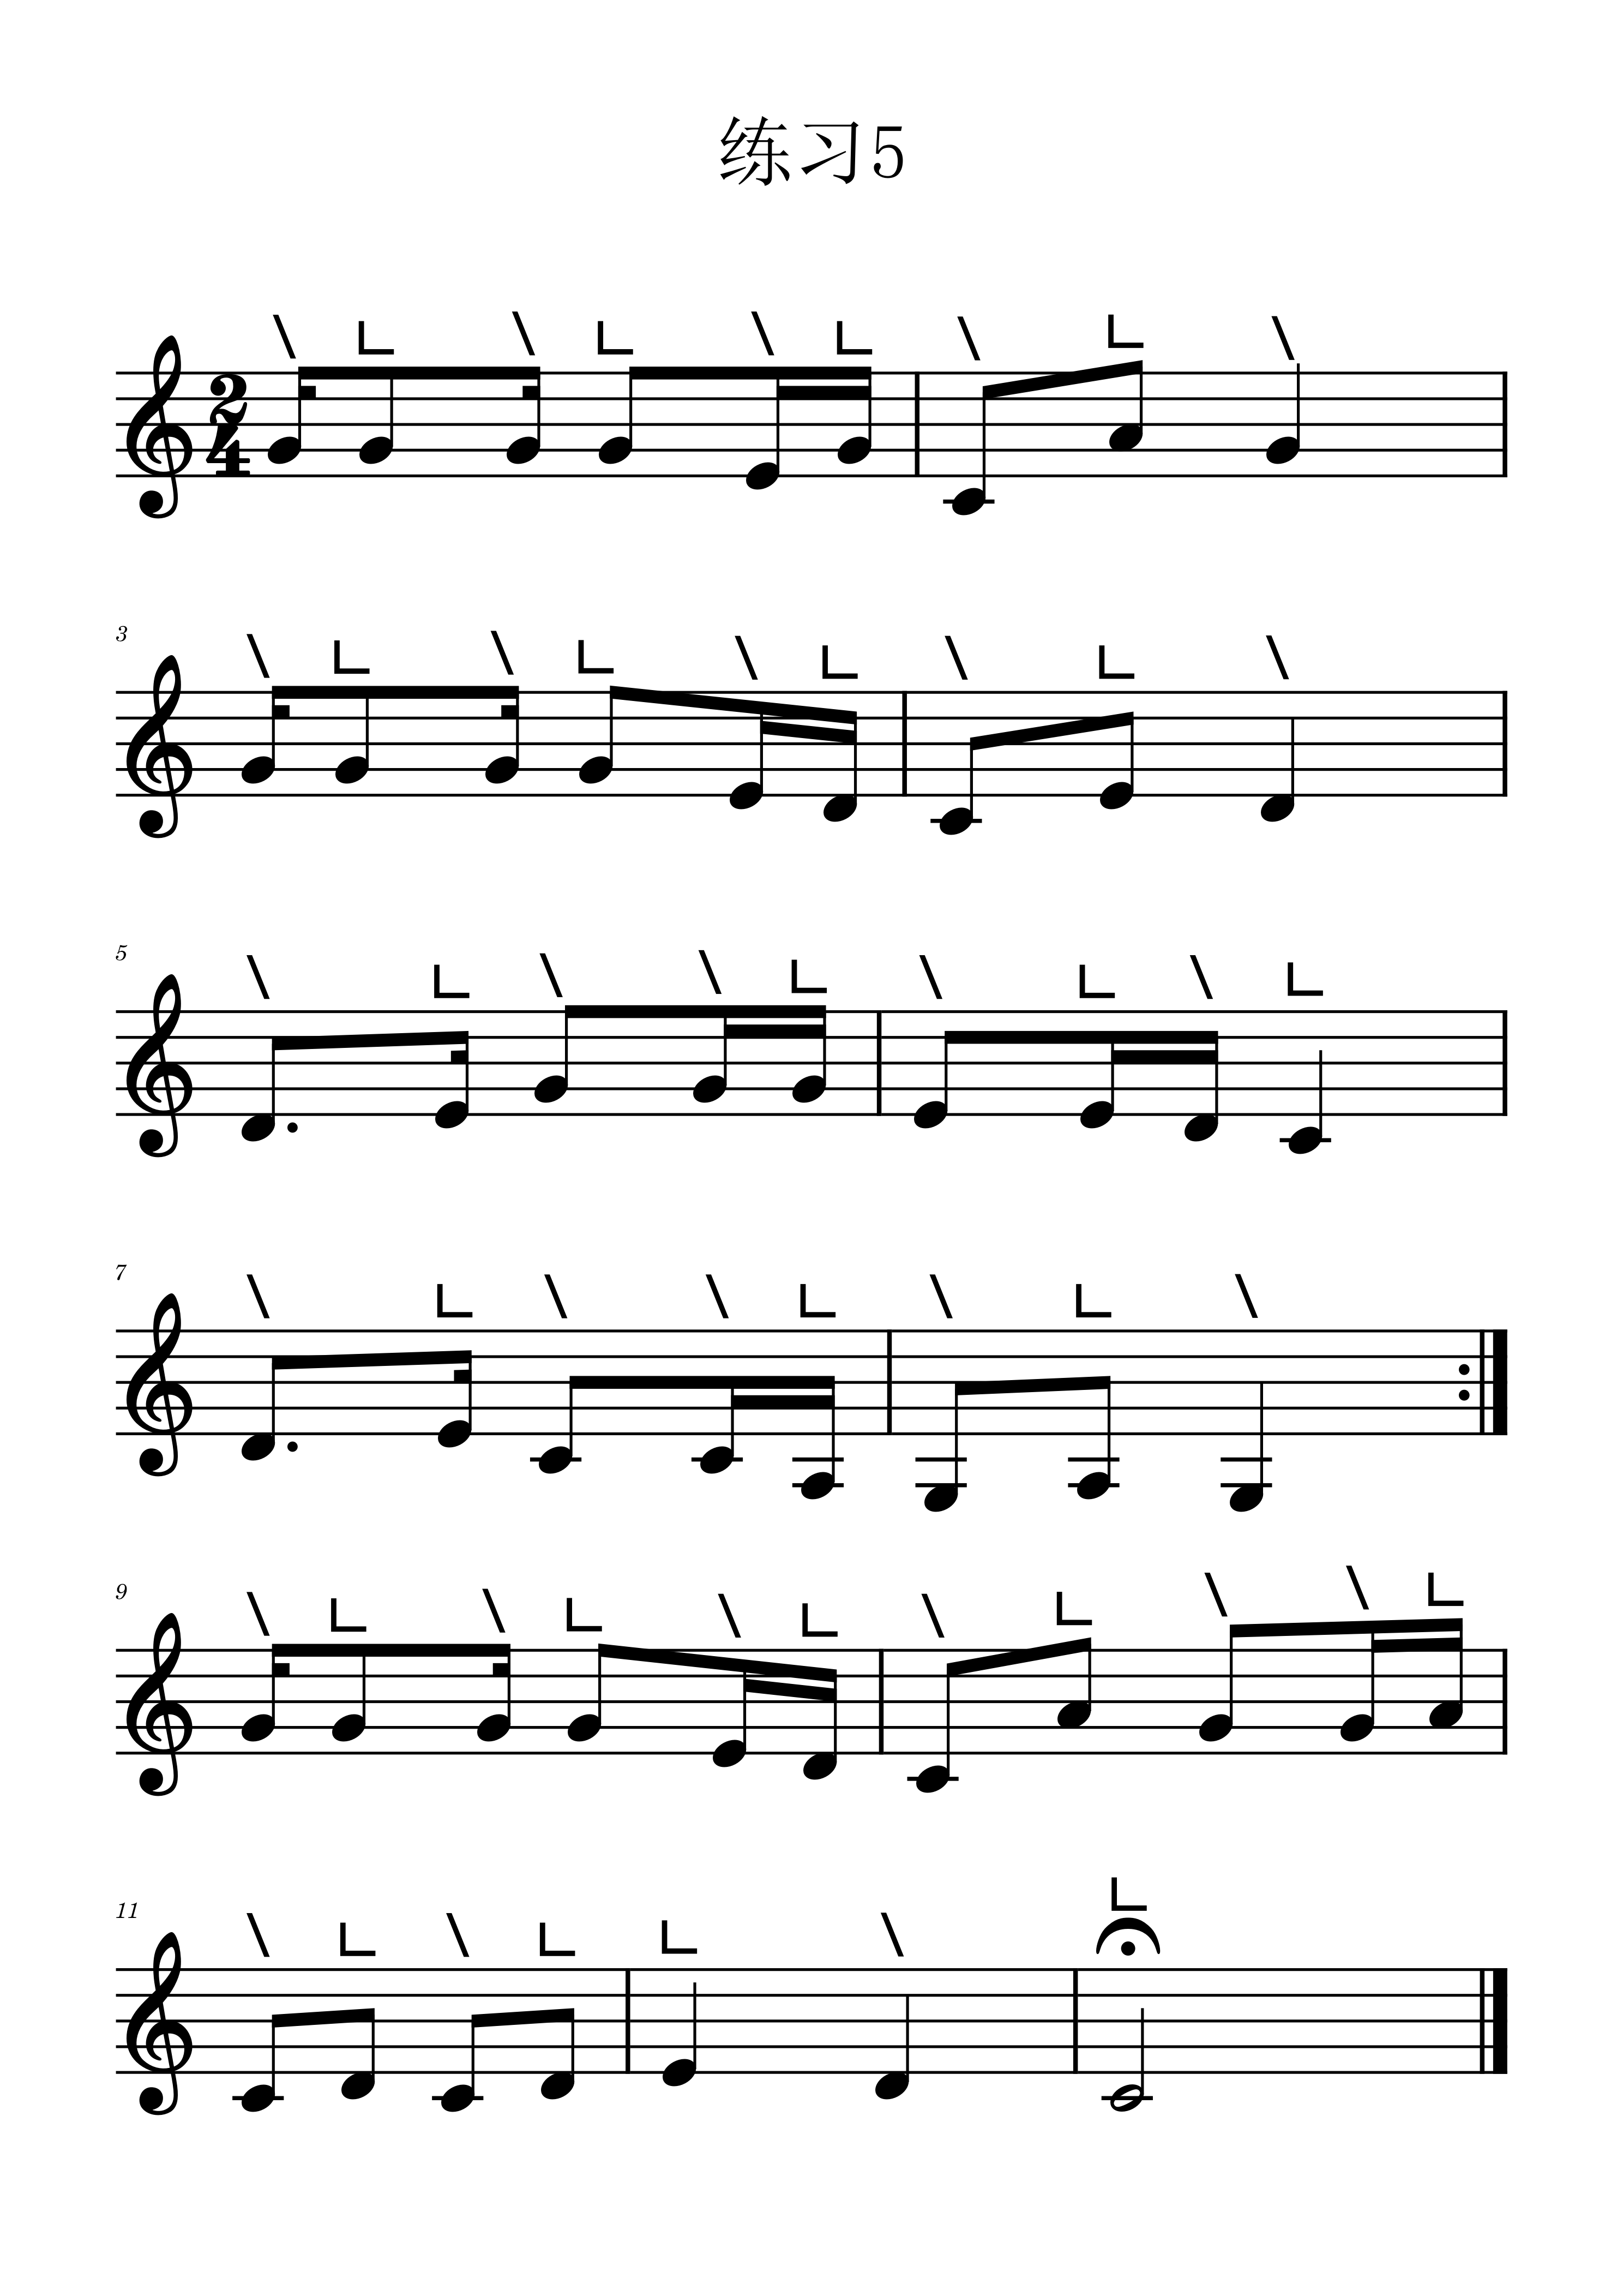 Etude 5 in key C of Guzheng staff（guzheng sheet music）